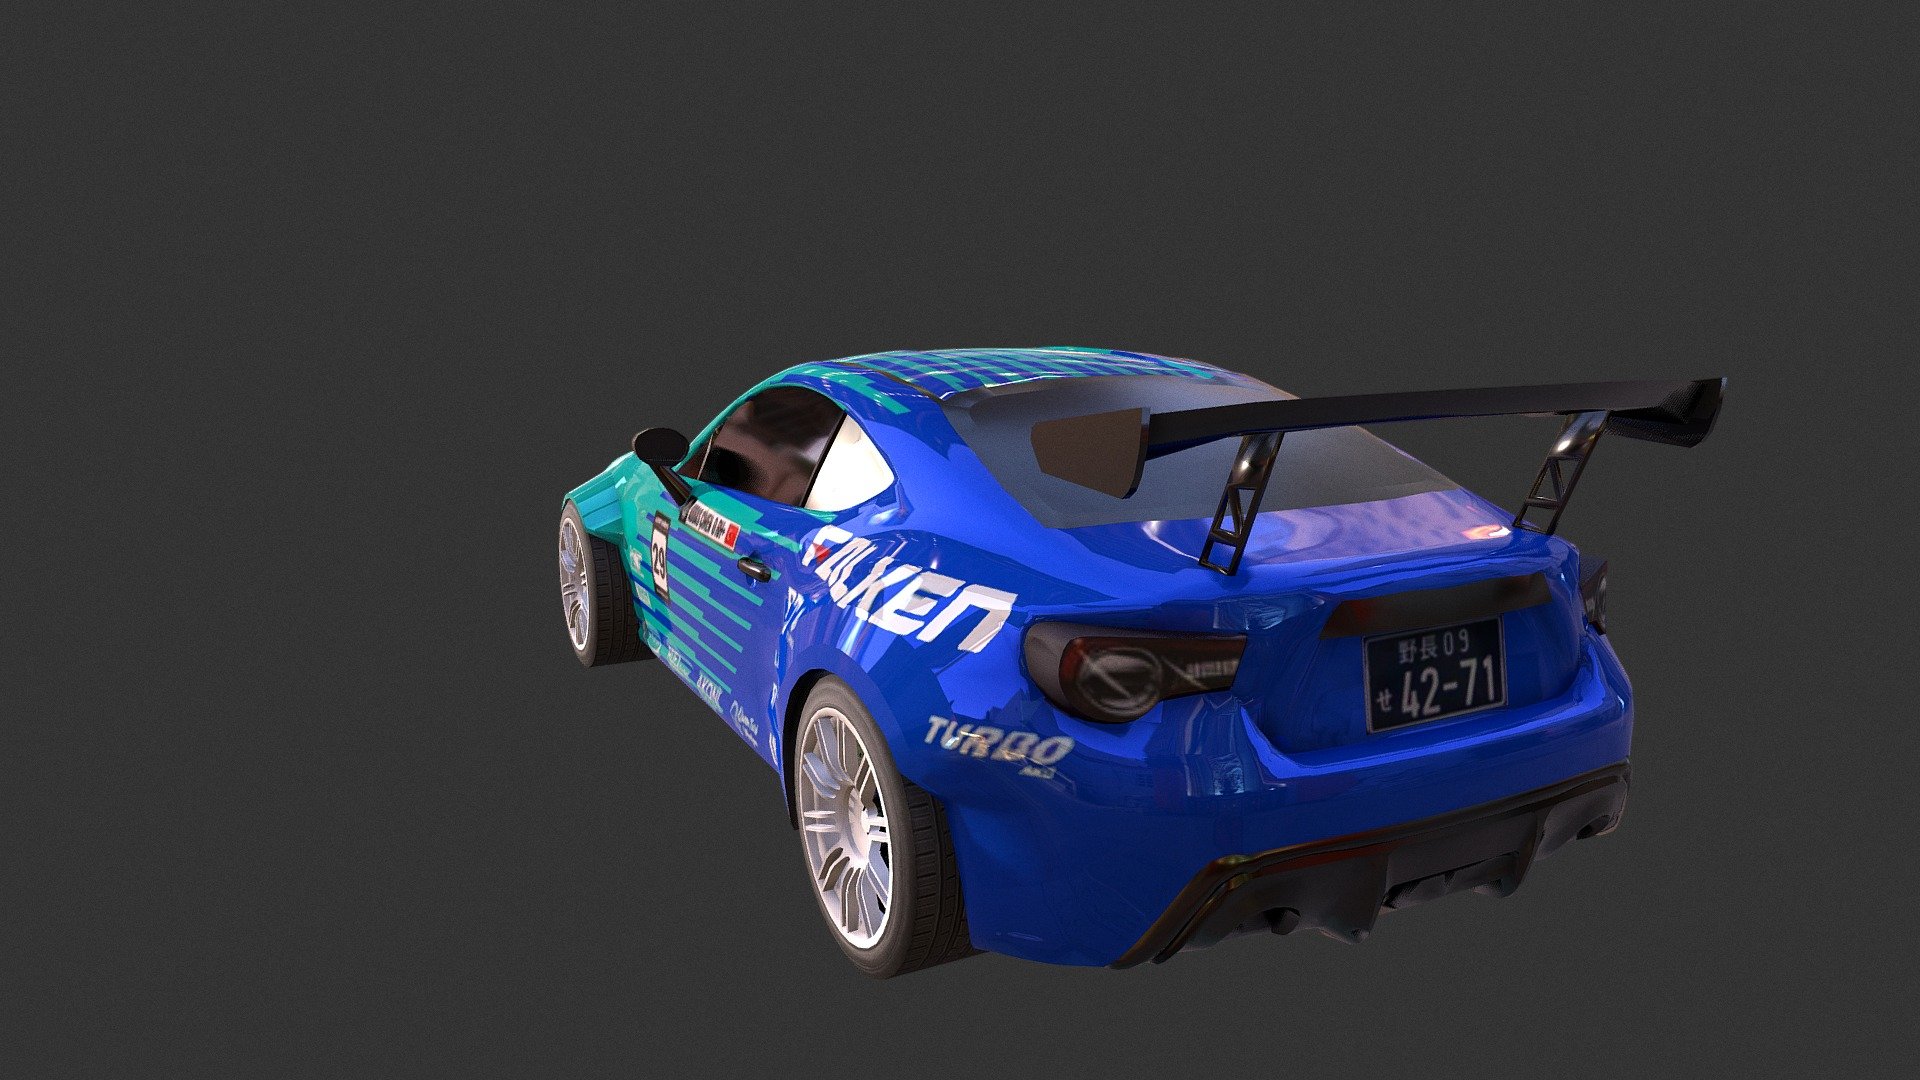 Modelled for fun and based on Abbas Cimen’s drift car 3d model